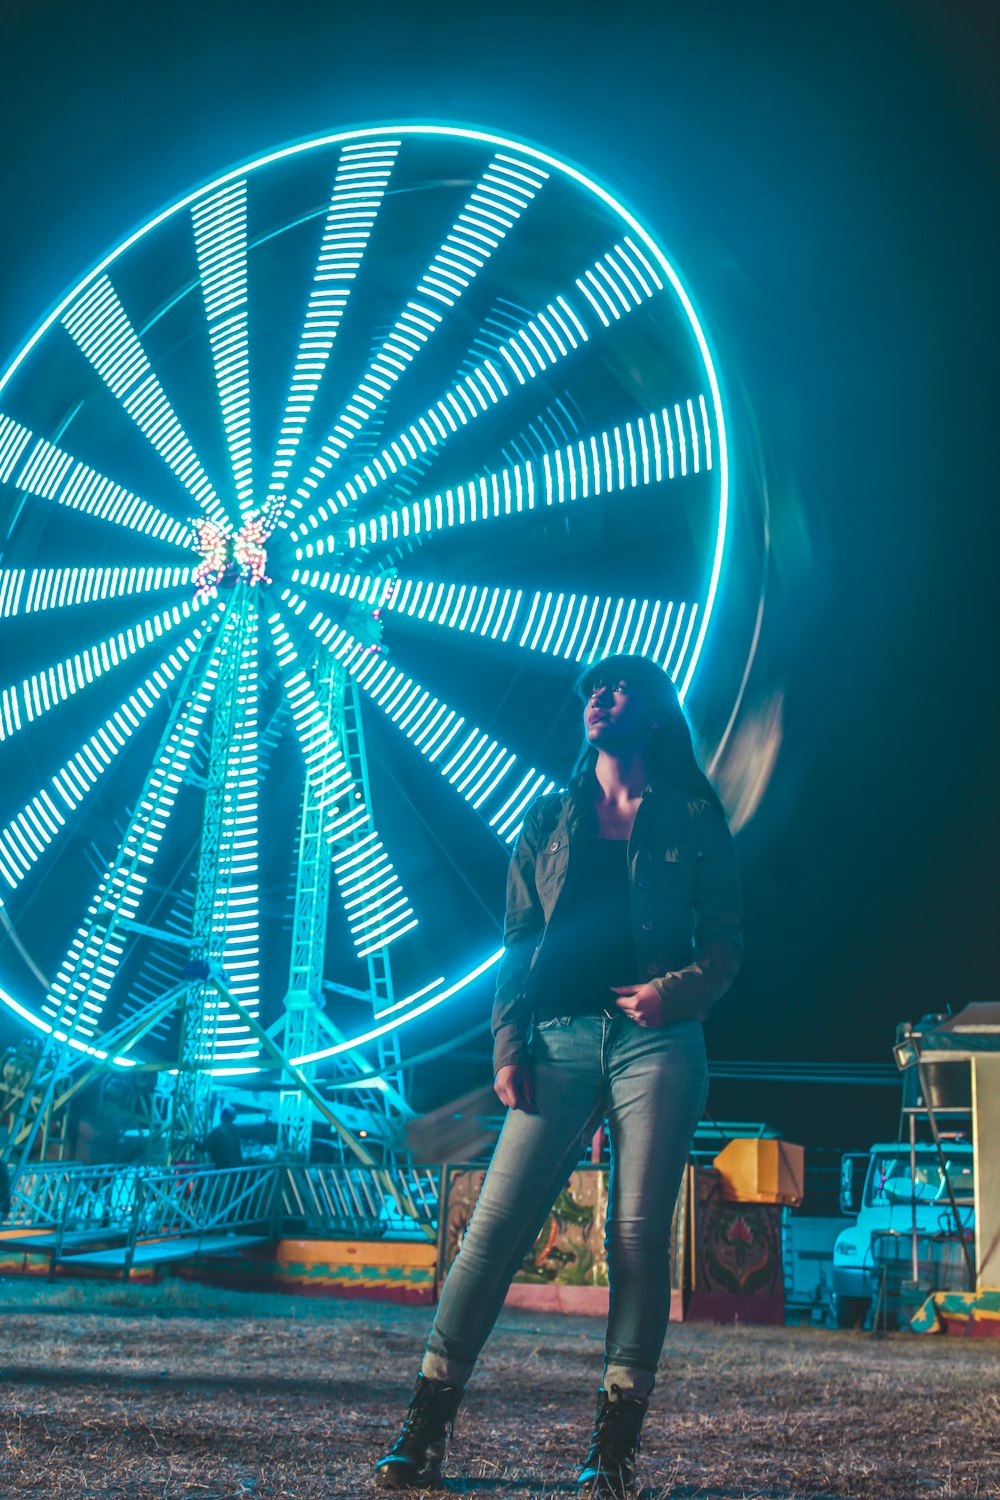 Mujer con chaqueta negra y jeans de mezclilla azul de pie cerca de la rueda de la fortuna iluminada azul durante la noche